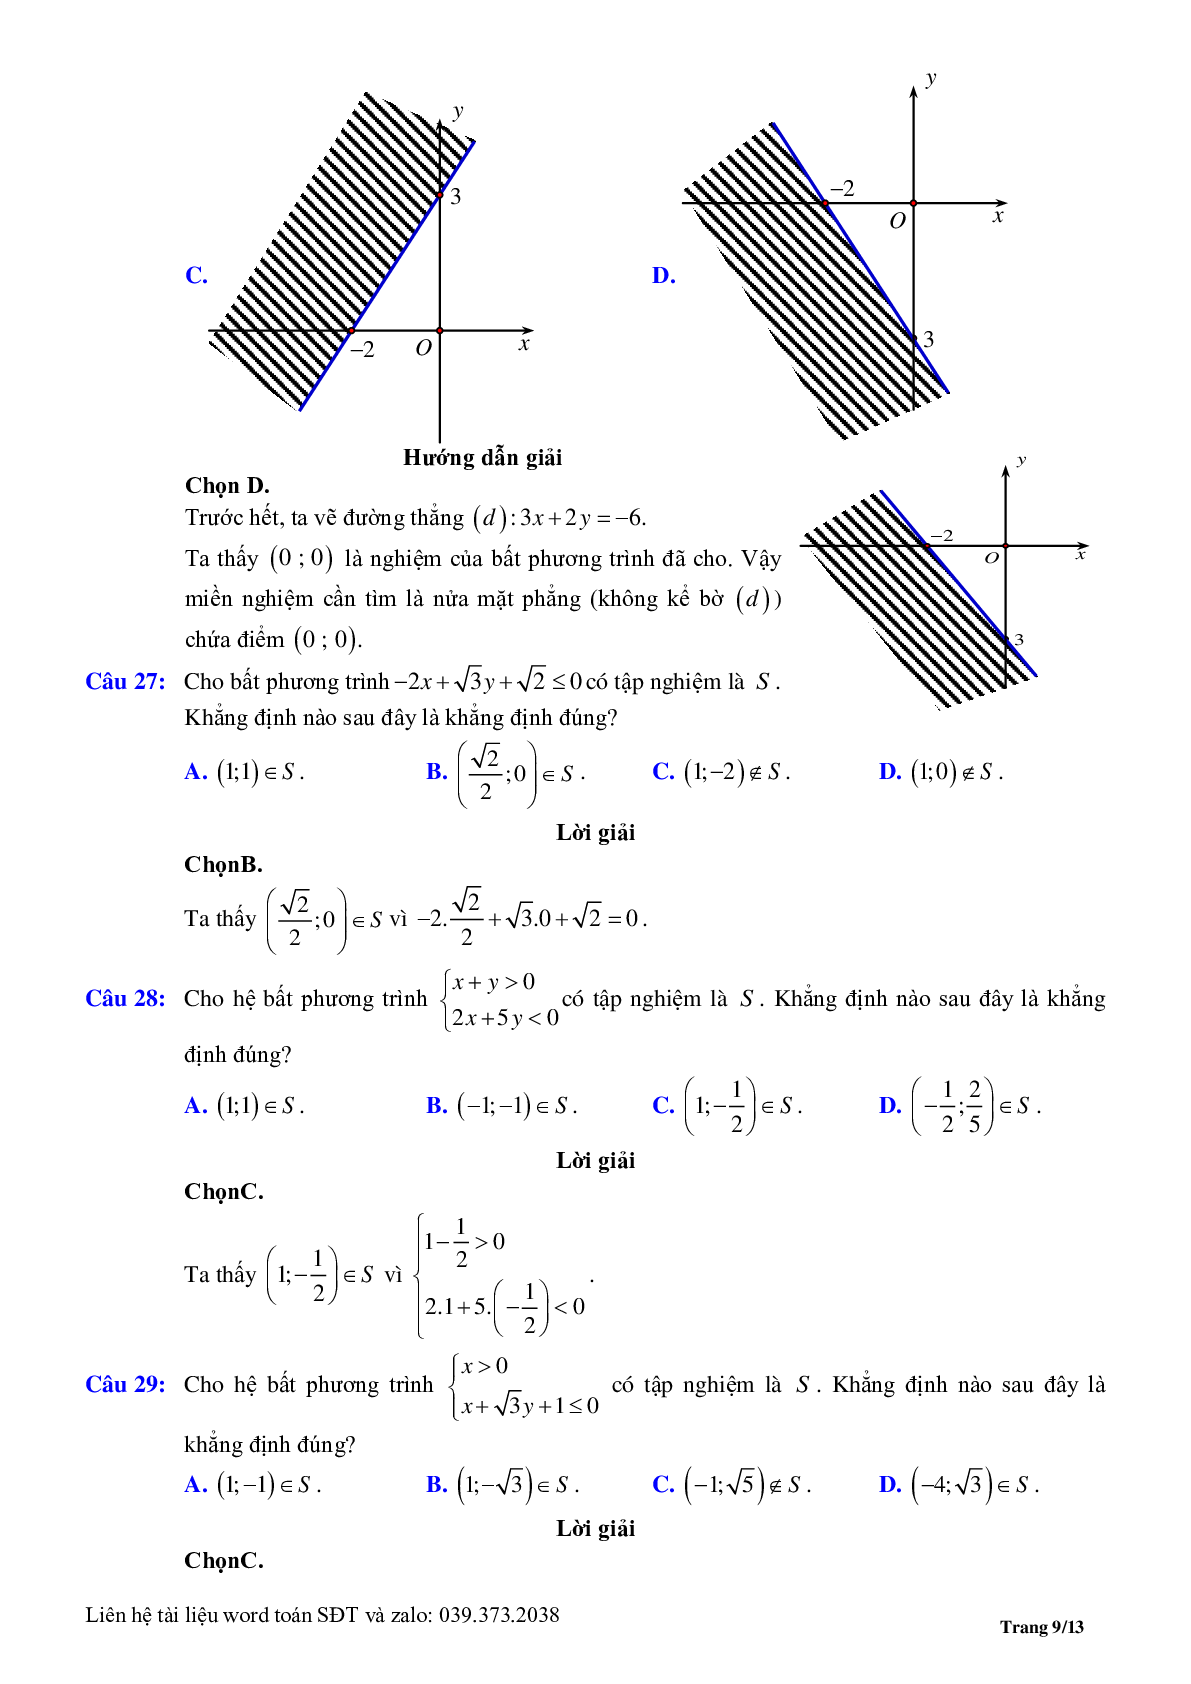 Chuyên đề bất phương trình, hệ phương trình bậc nhất hai ẩn (trang 9)